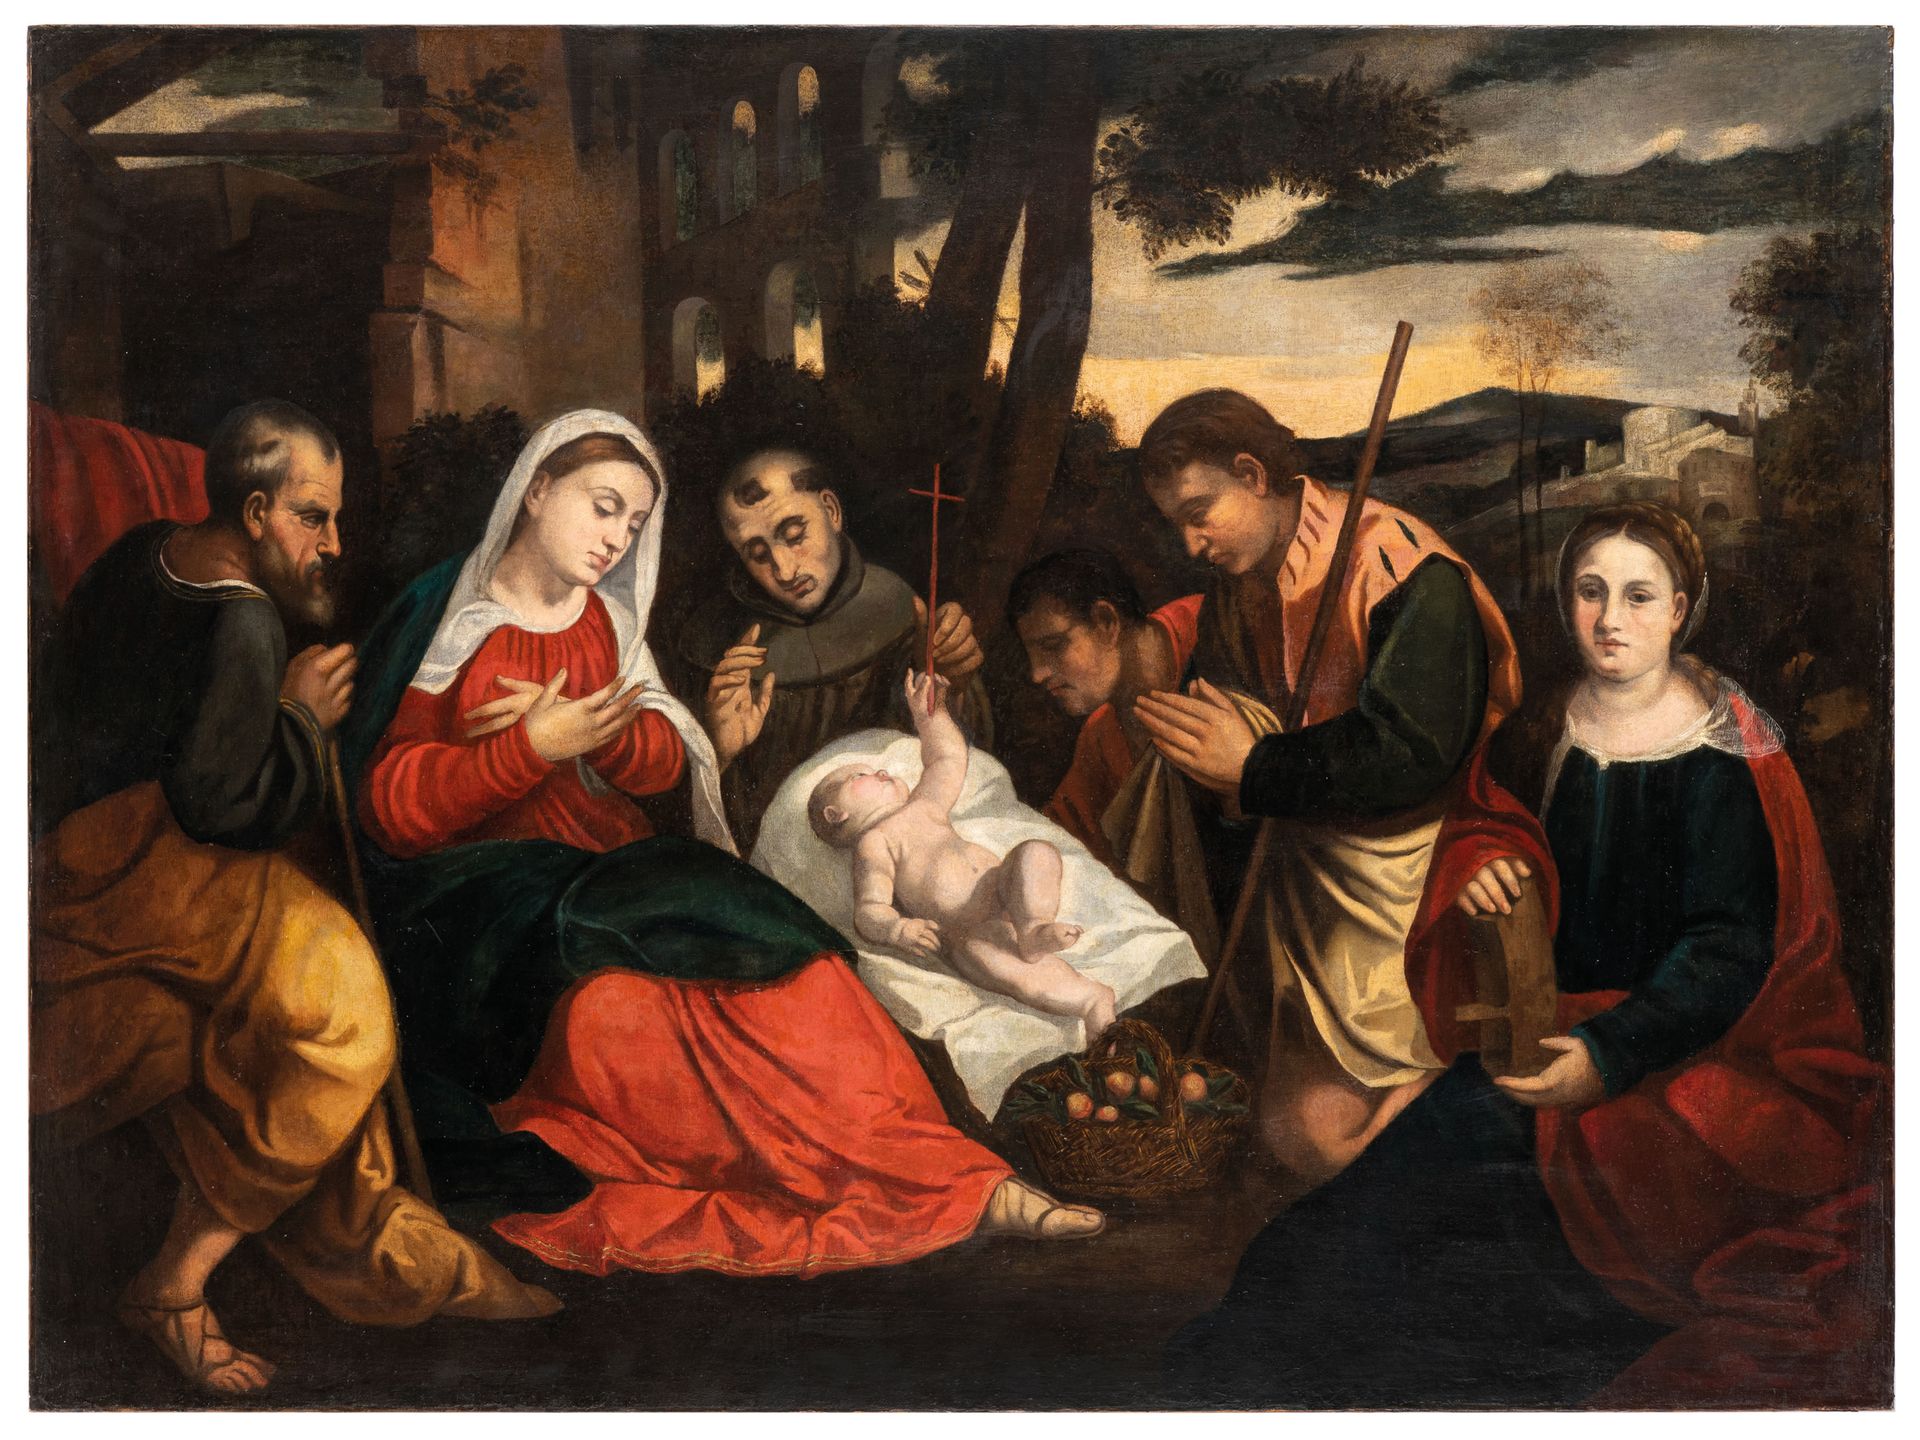 PITTORE DEL XVII SECOLO Adoration des bergers
Huile sur toile, 125X168 cm

Le ta&hellip;